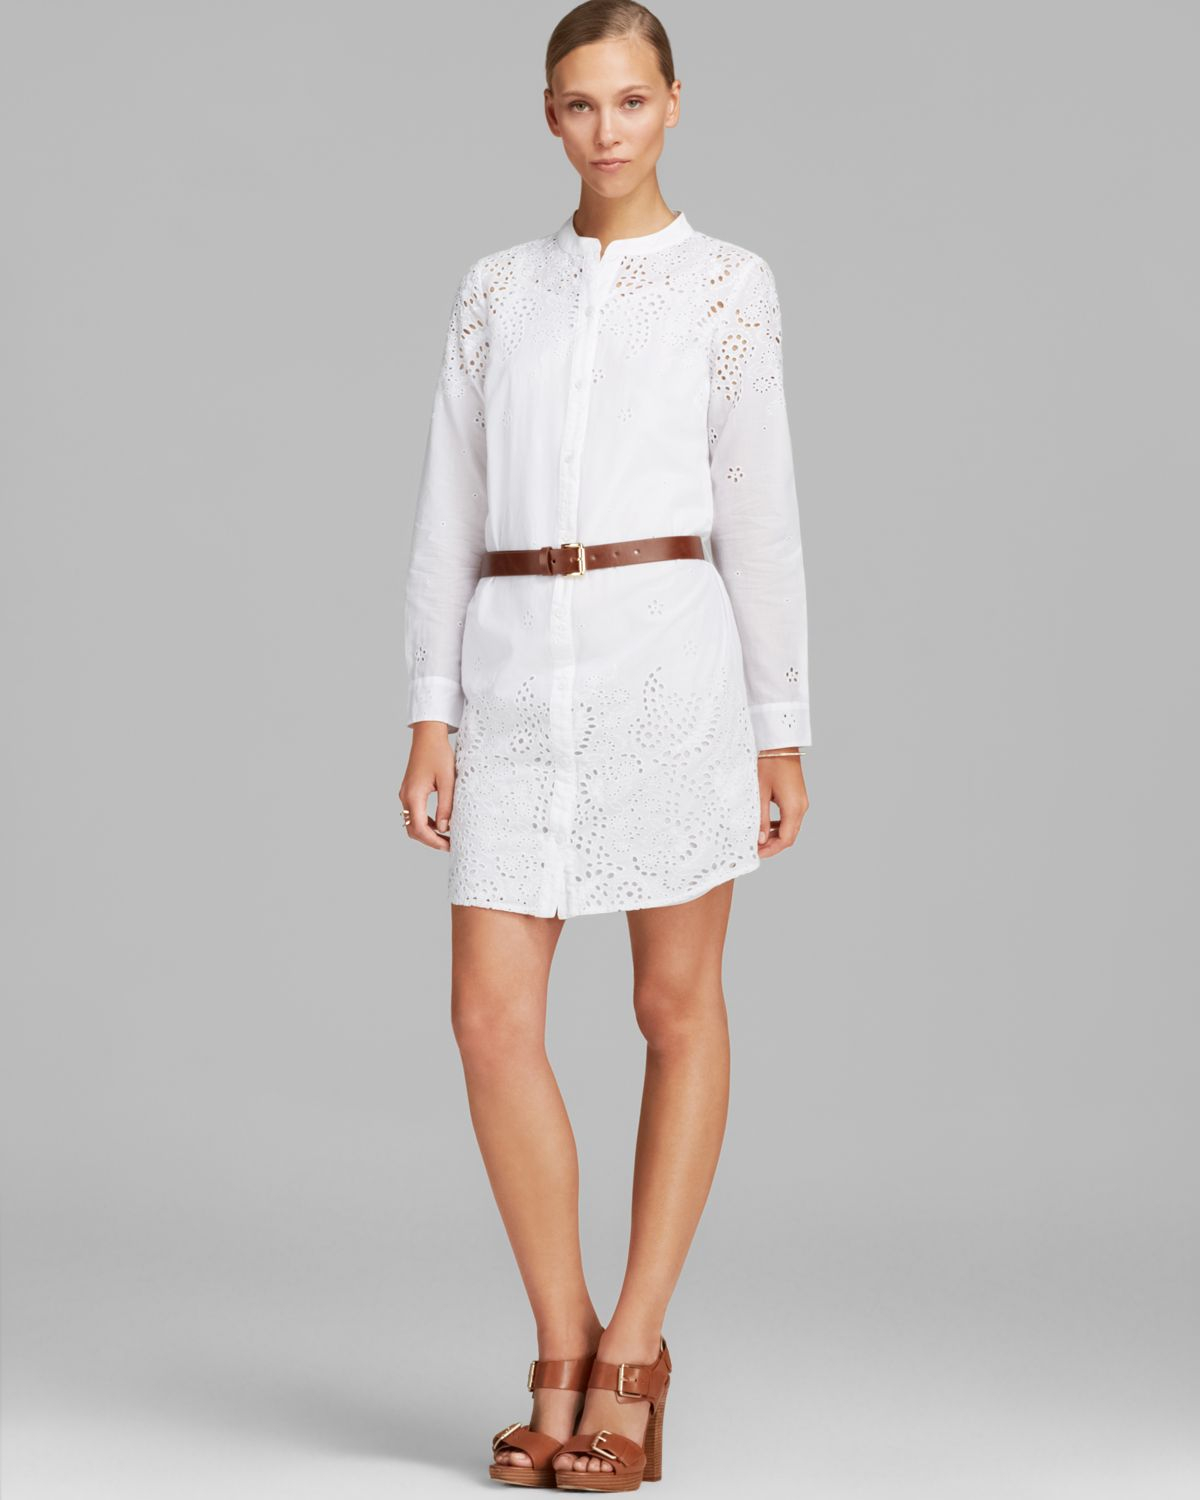 Lyst Michael Michael Kors Eyelet Shirt  Dress  in White 